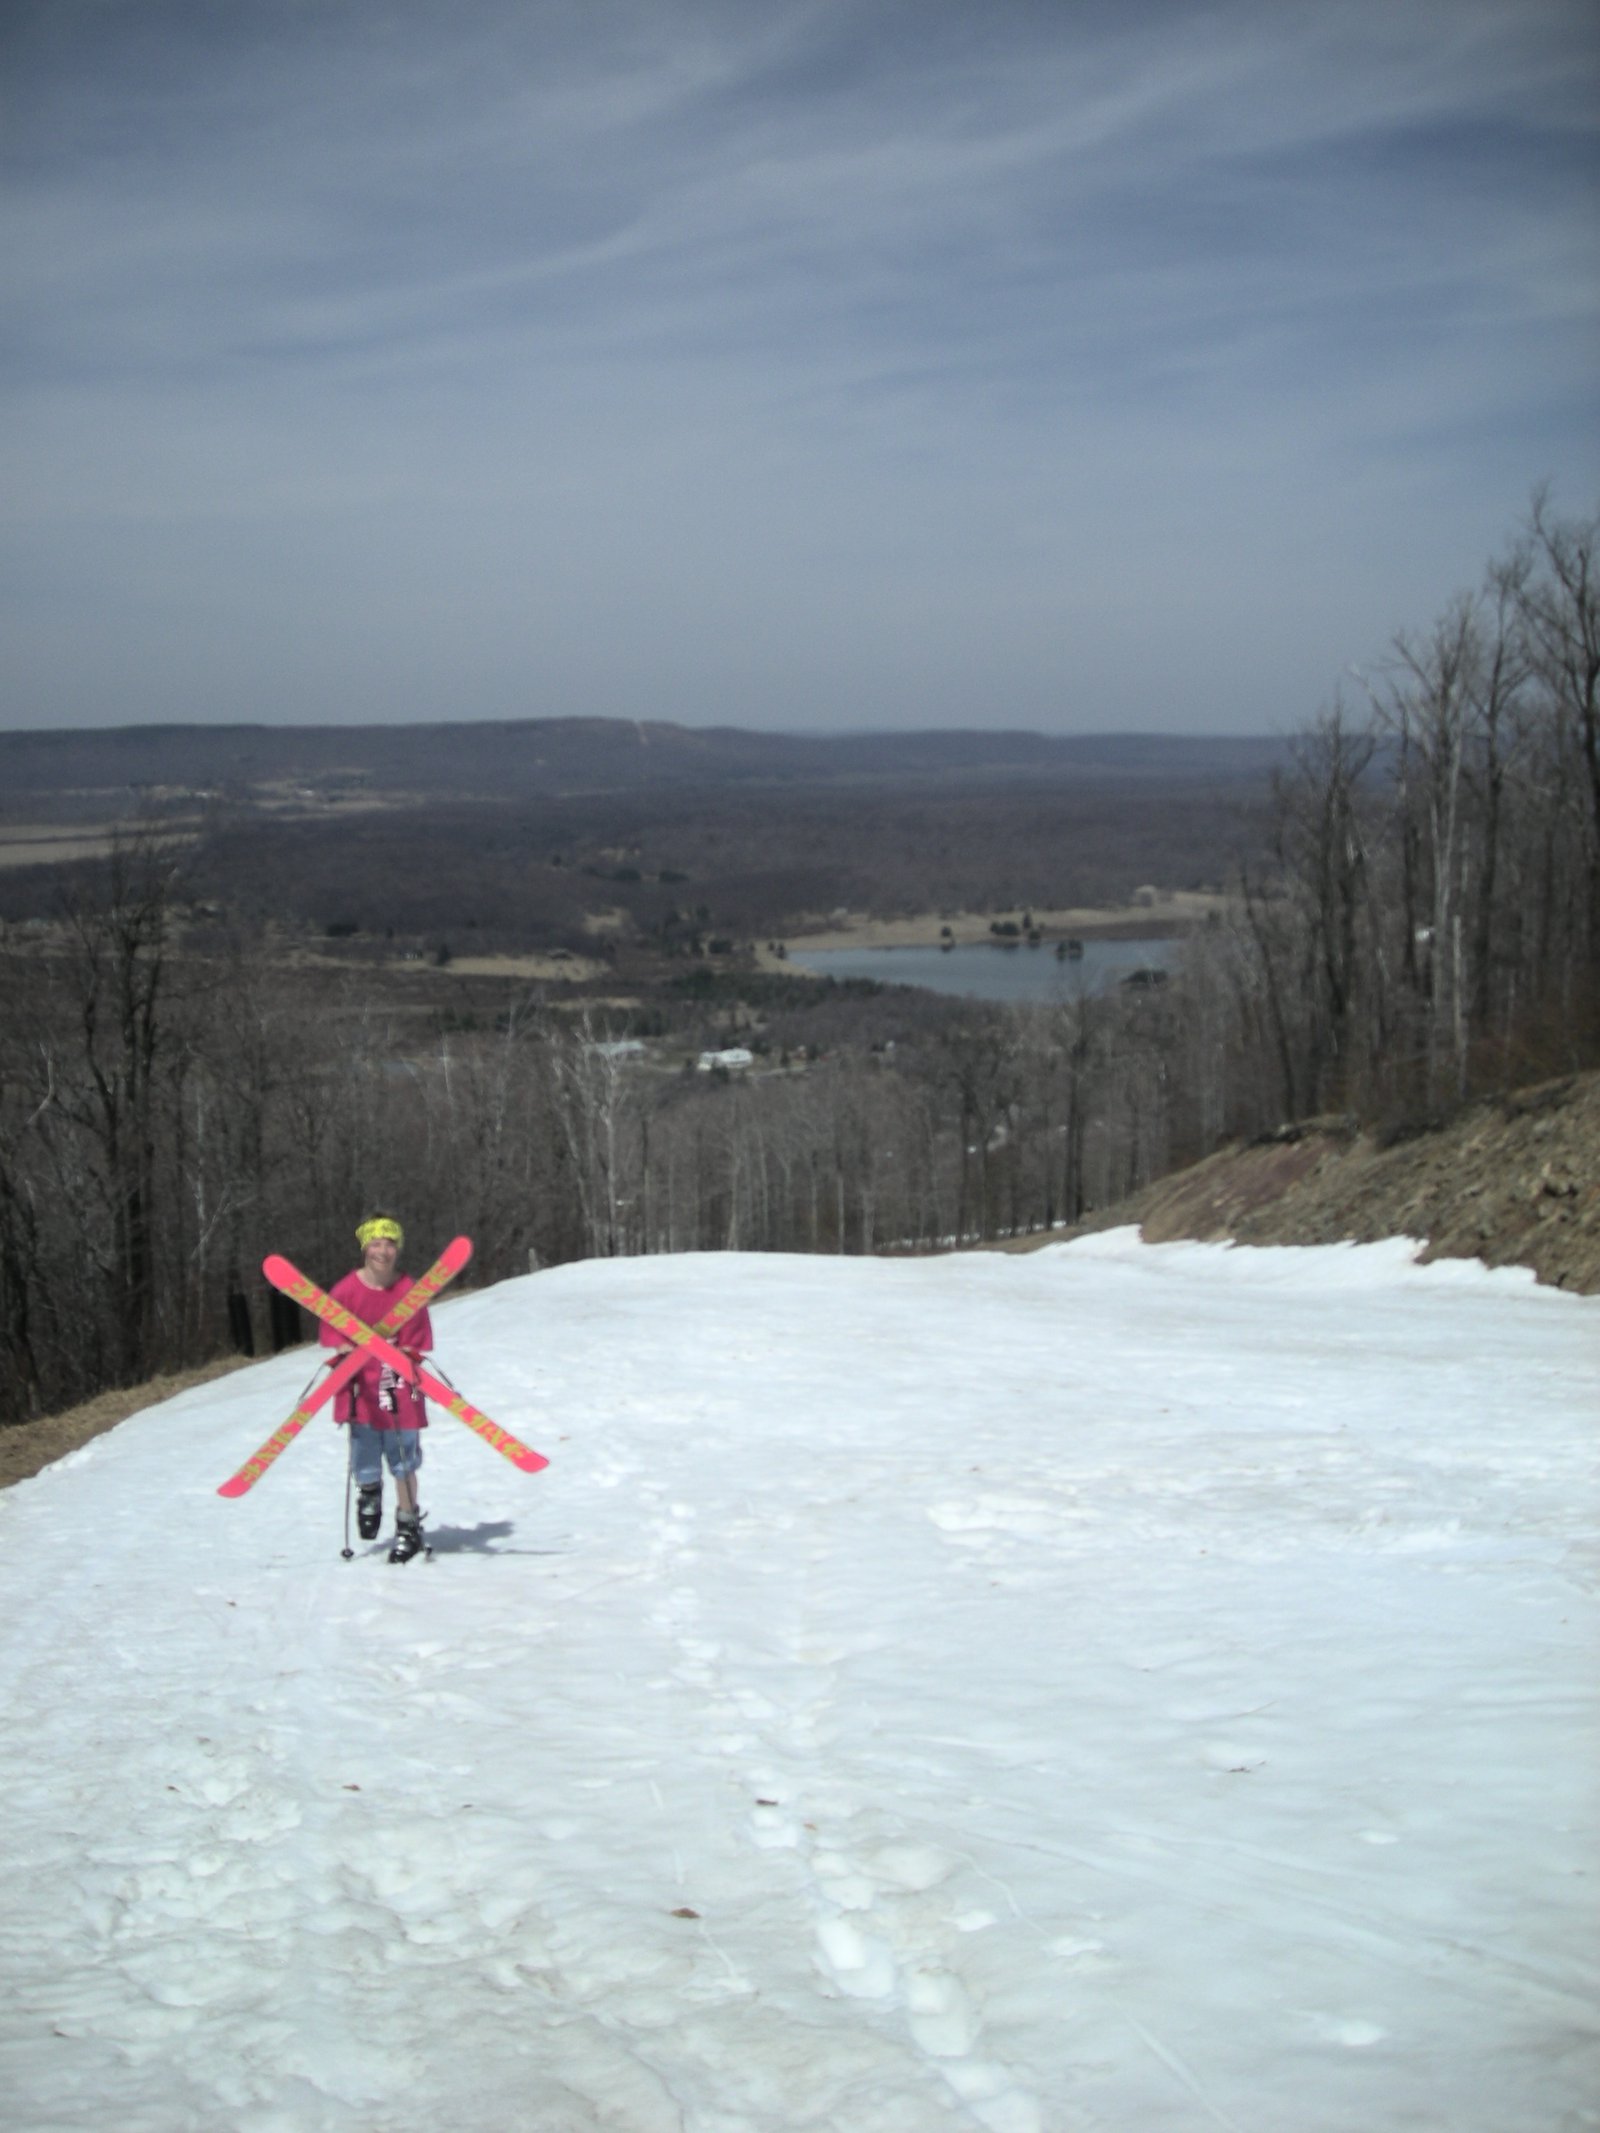 Spring skiing in WV